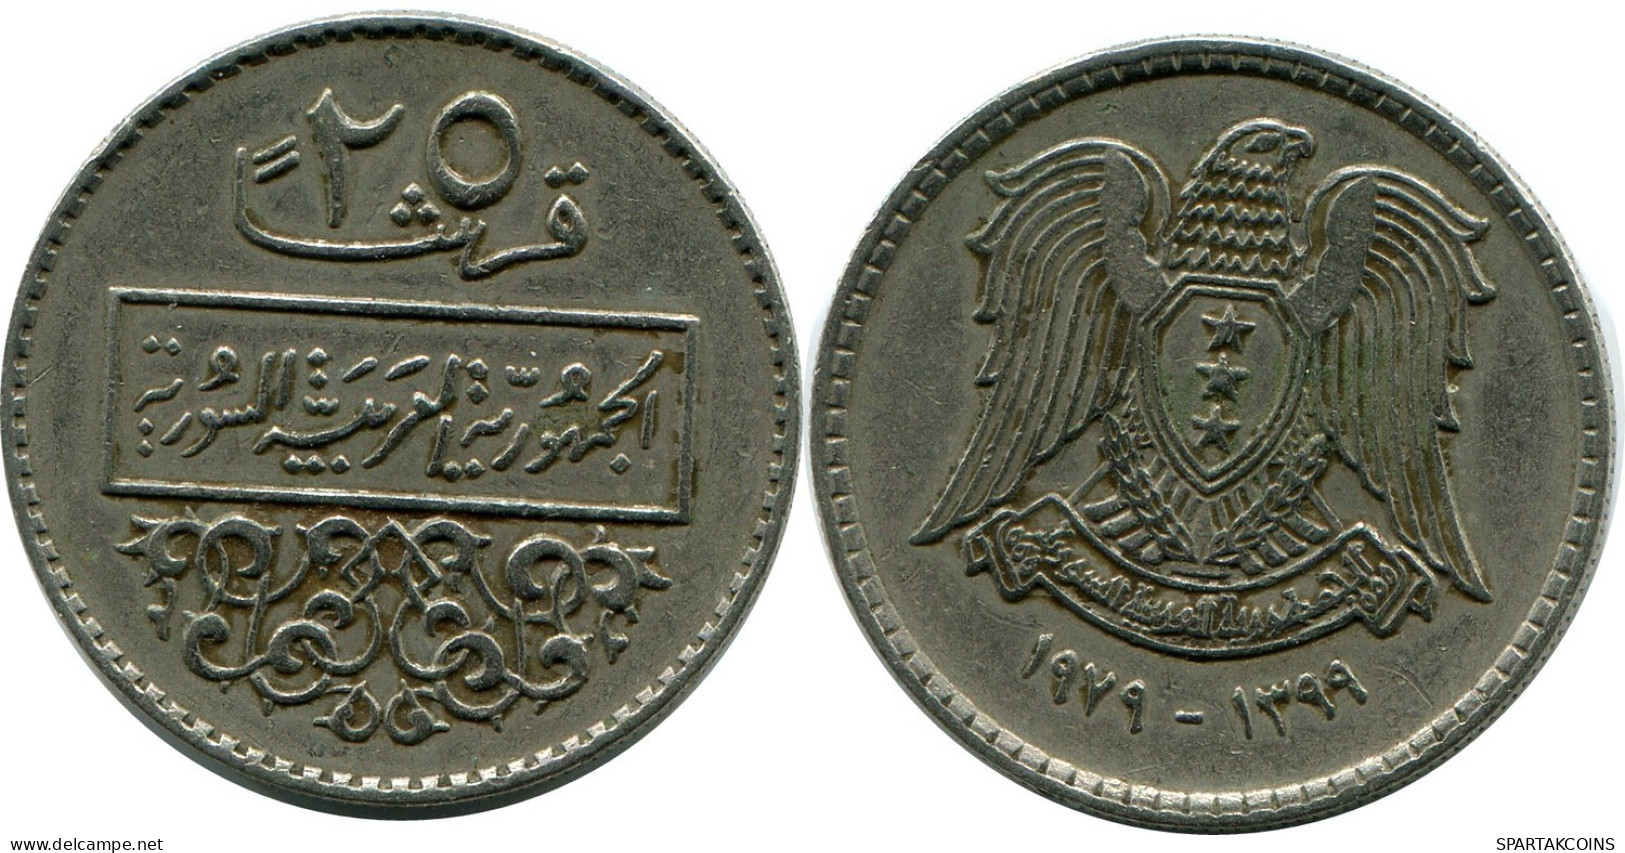 25 QIRSH / PIASTRES 1979 SIRIA SYRIA Islámico Moneda #AP554.E.A - Syrien